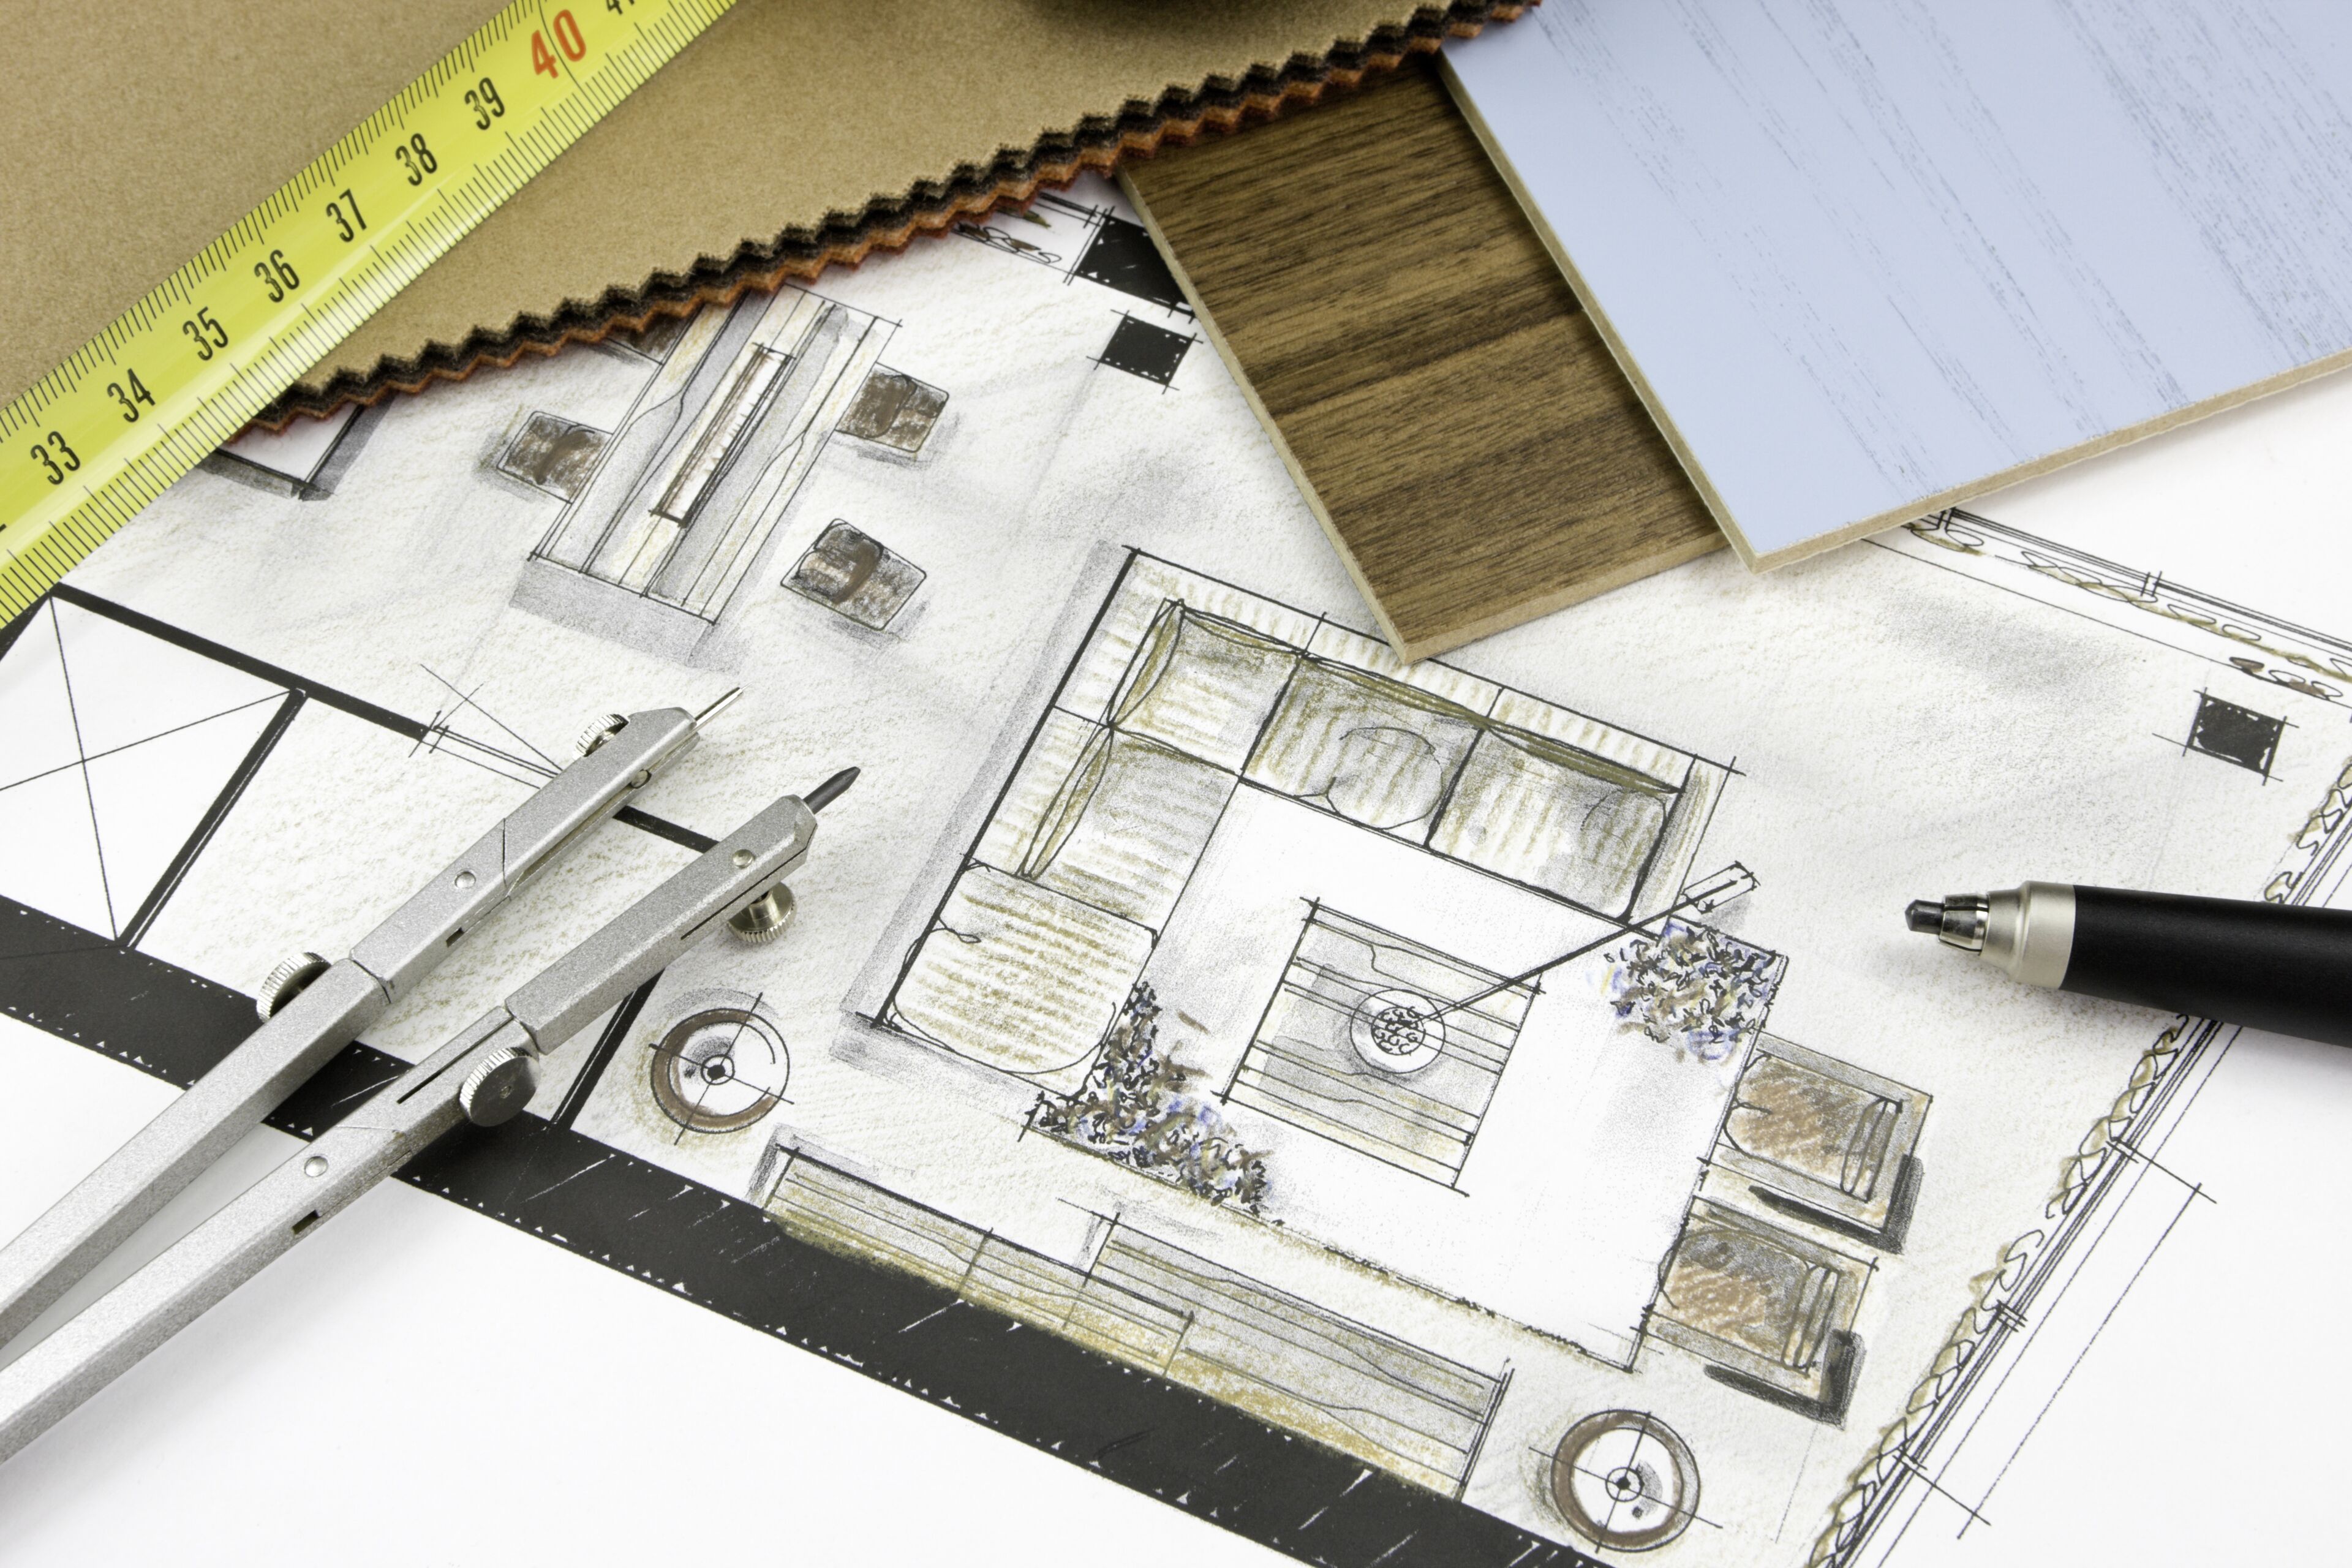 Un plan d'architecture détaillé avec règle, compas et échantillons de matériaux, indiquant un design en cours.